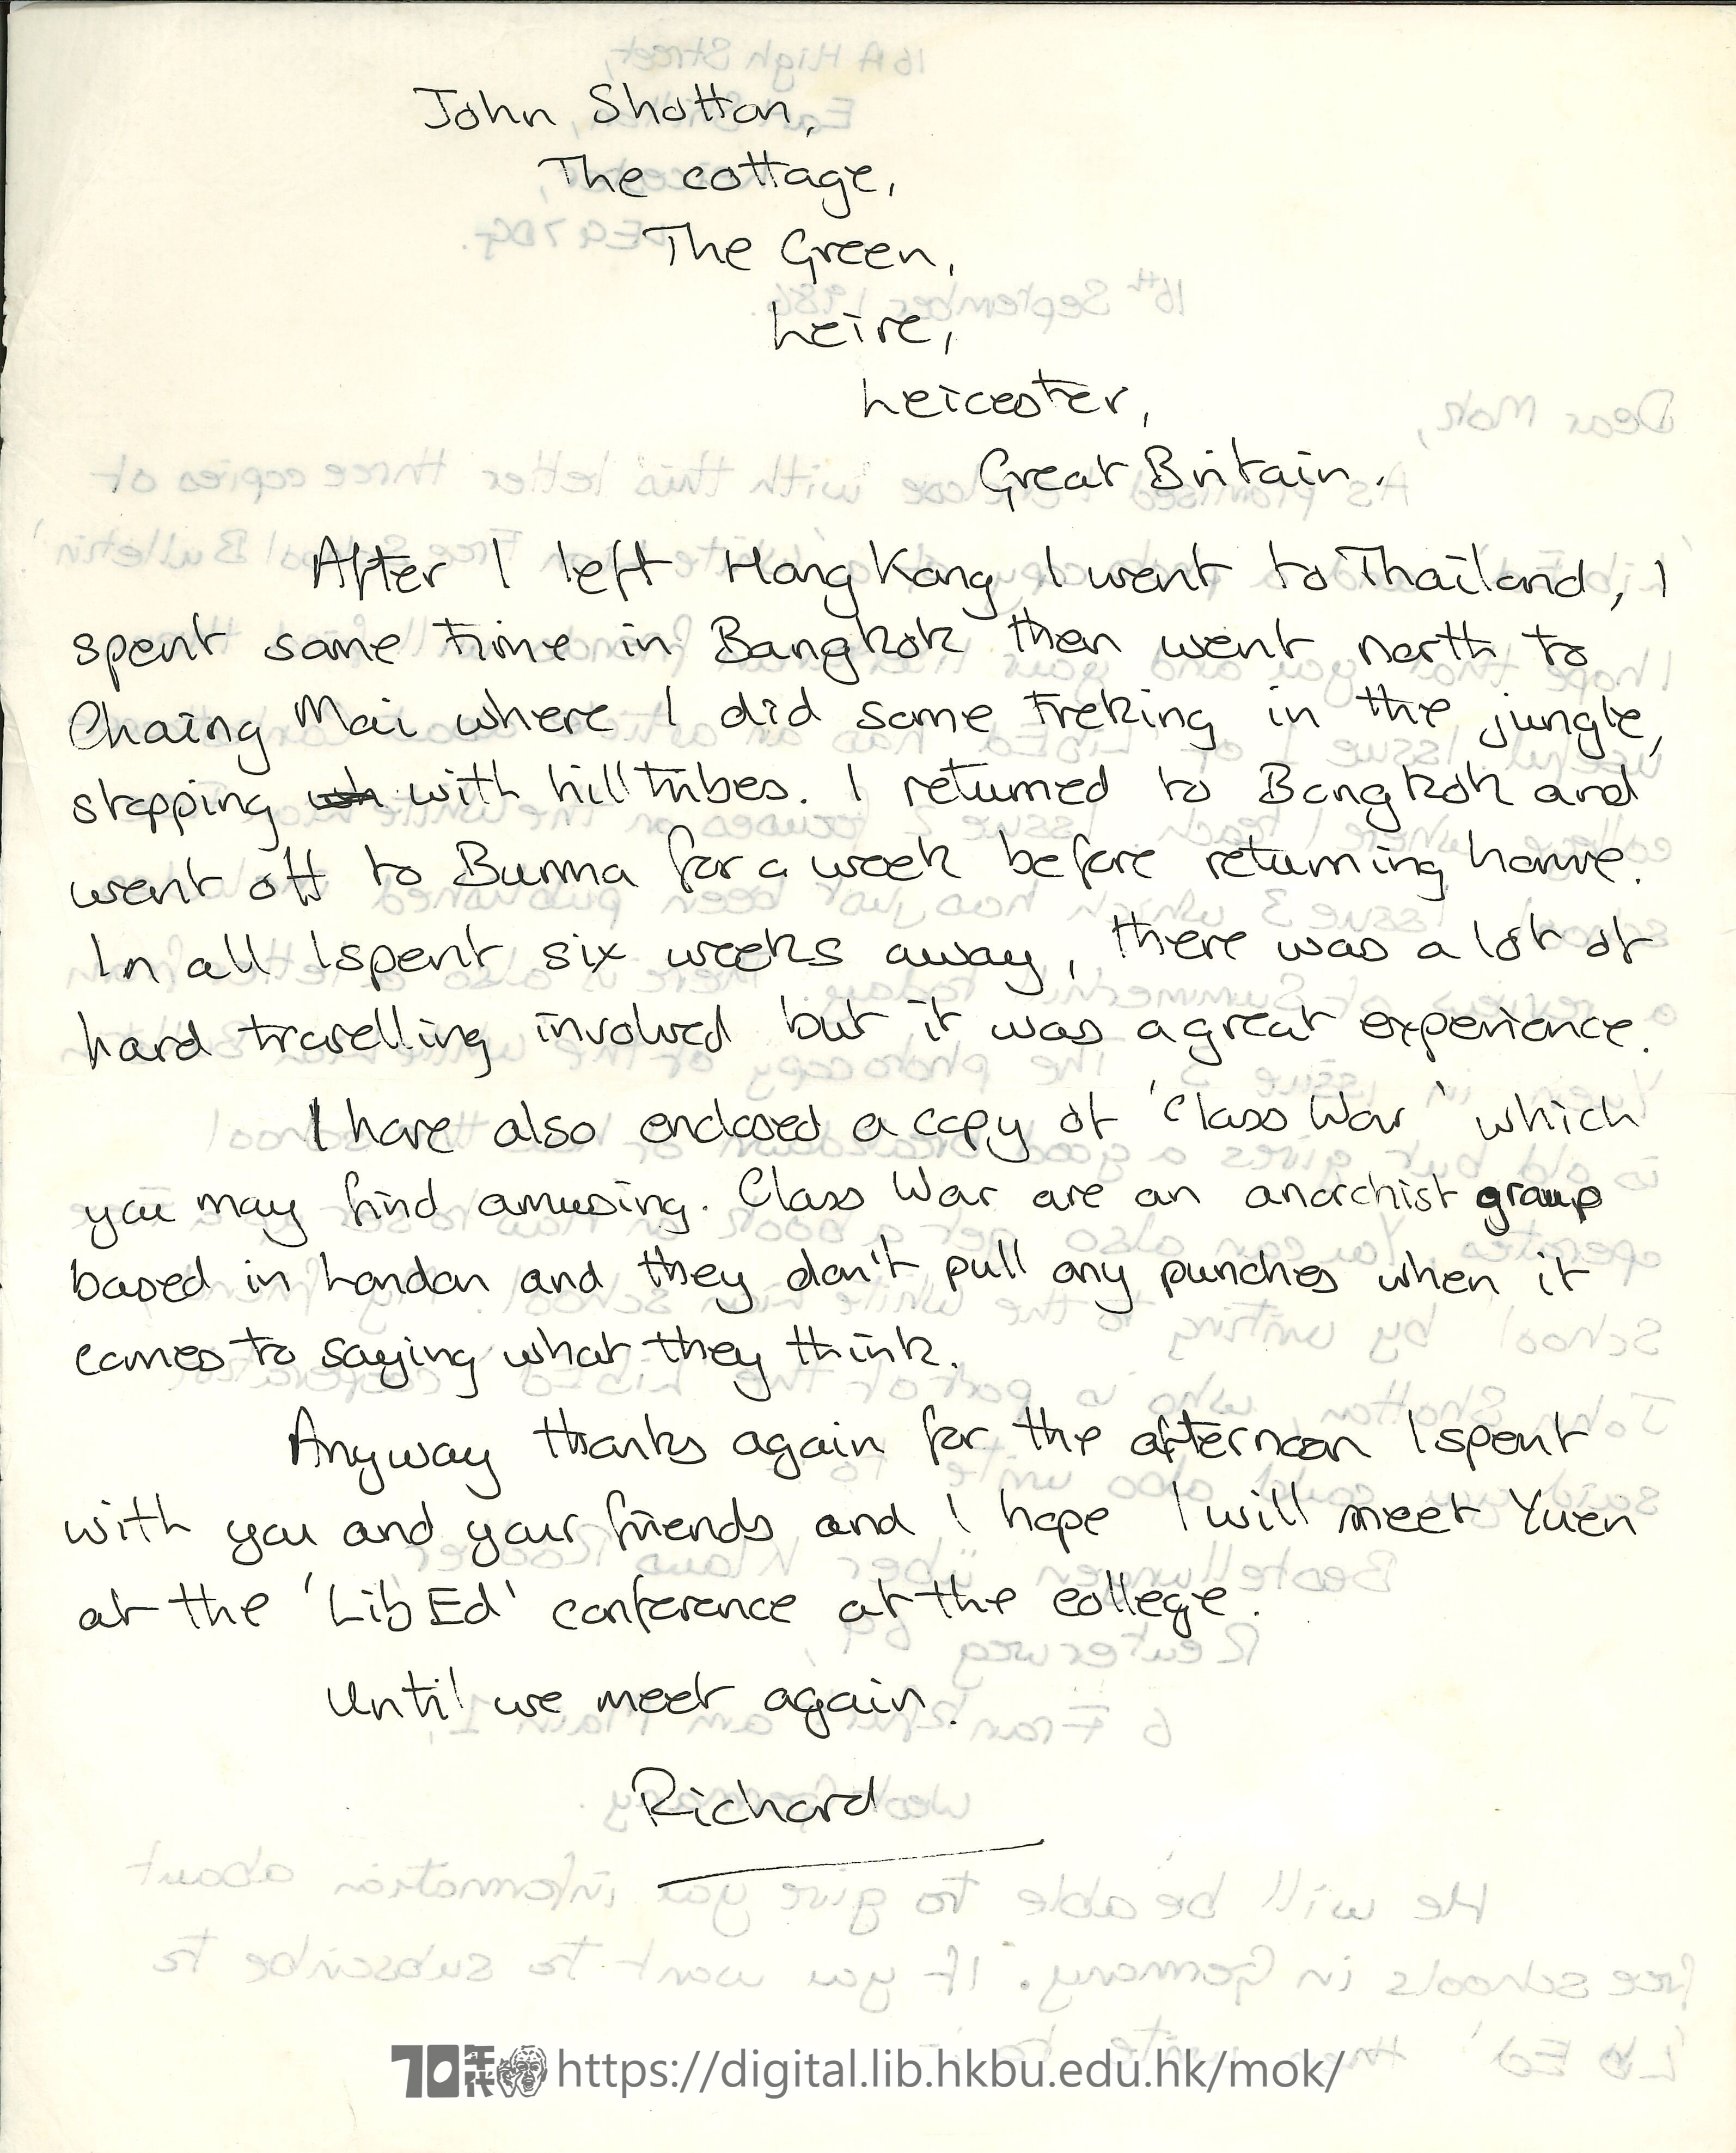   Letter from Richard to Mok Chiu Yu Richard 